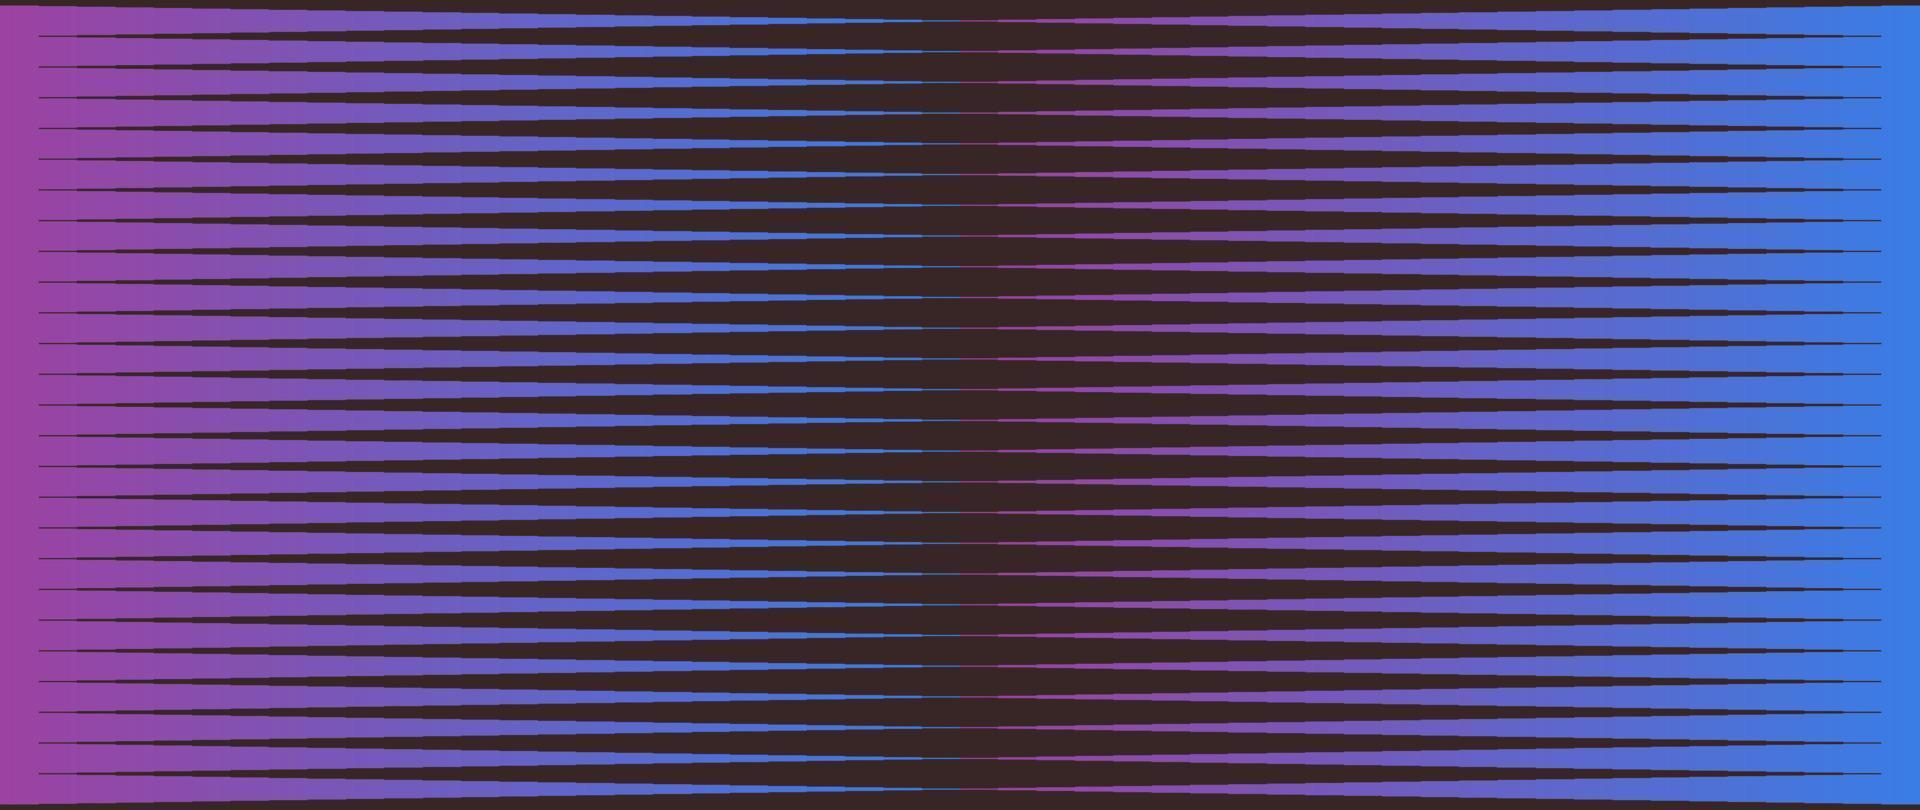 motivo sfumato a strisce viola e blu su sfondo scuro e illustrazione vettoriale piatta di illusione ottica.